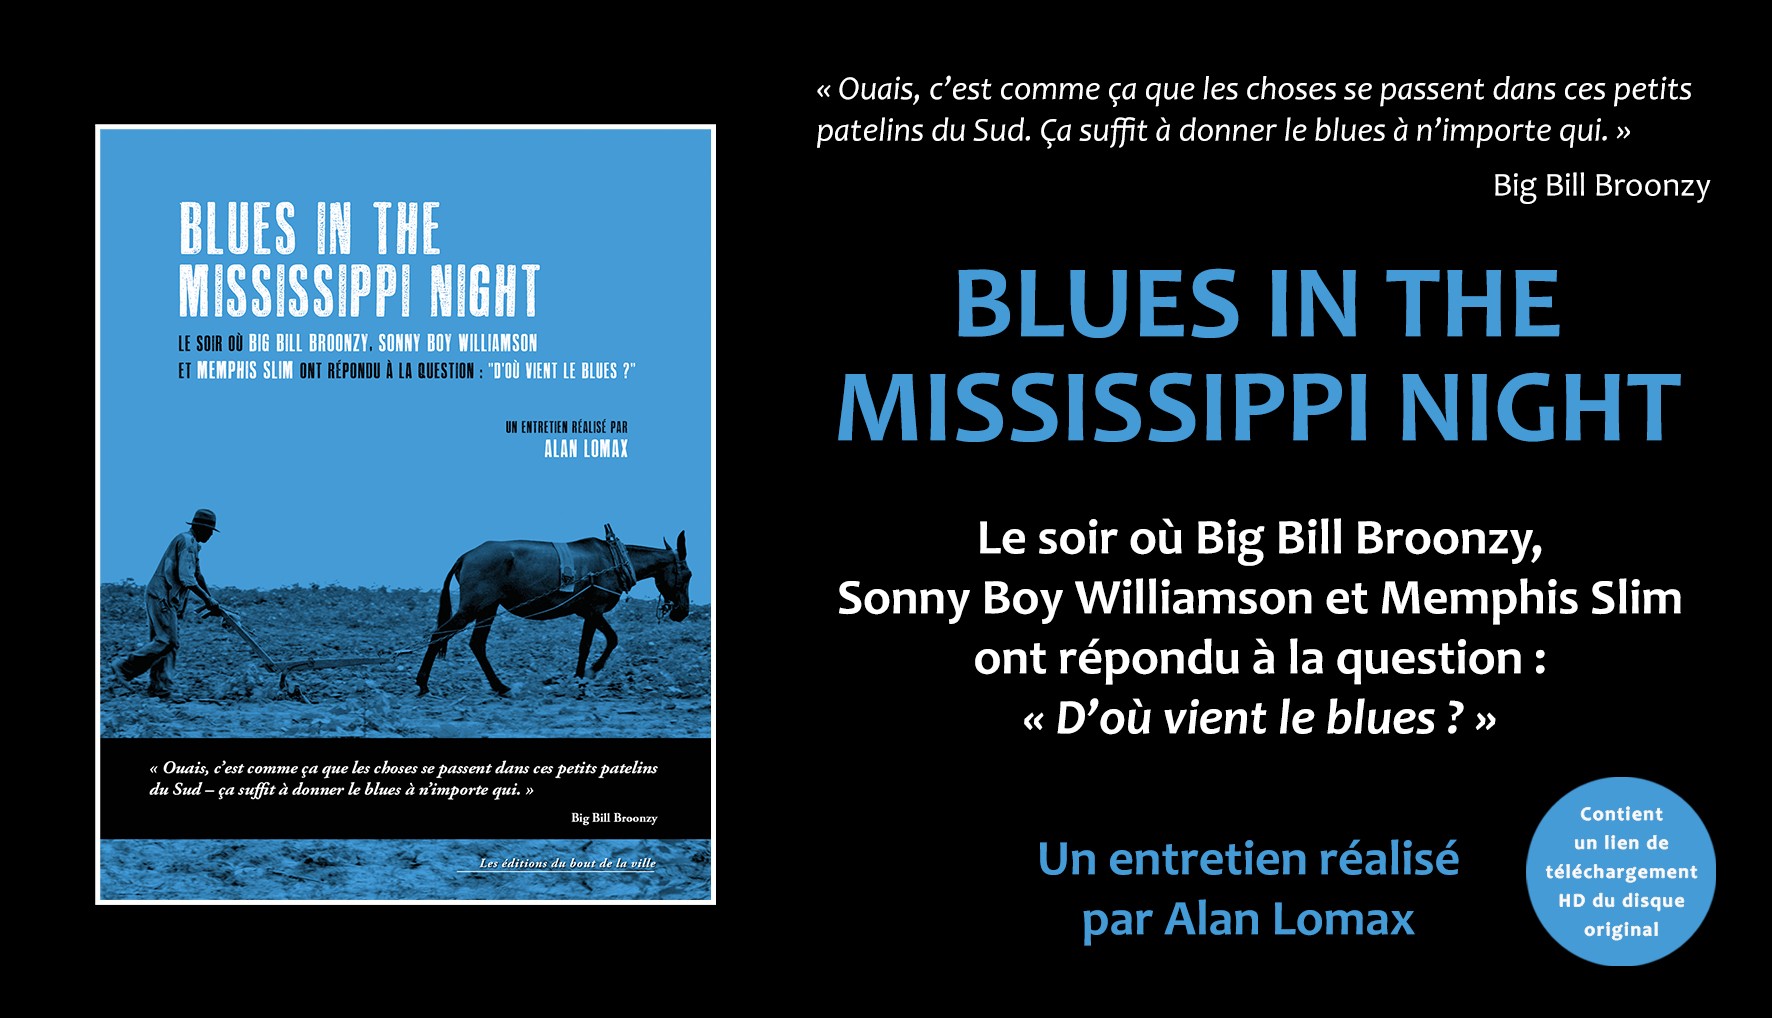 "Blues in the Mississippi night", un entretien réalisé par Alan Lomax